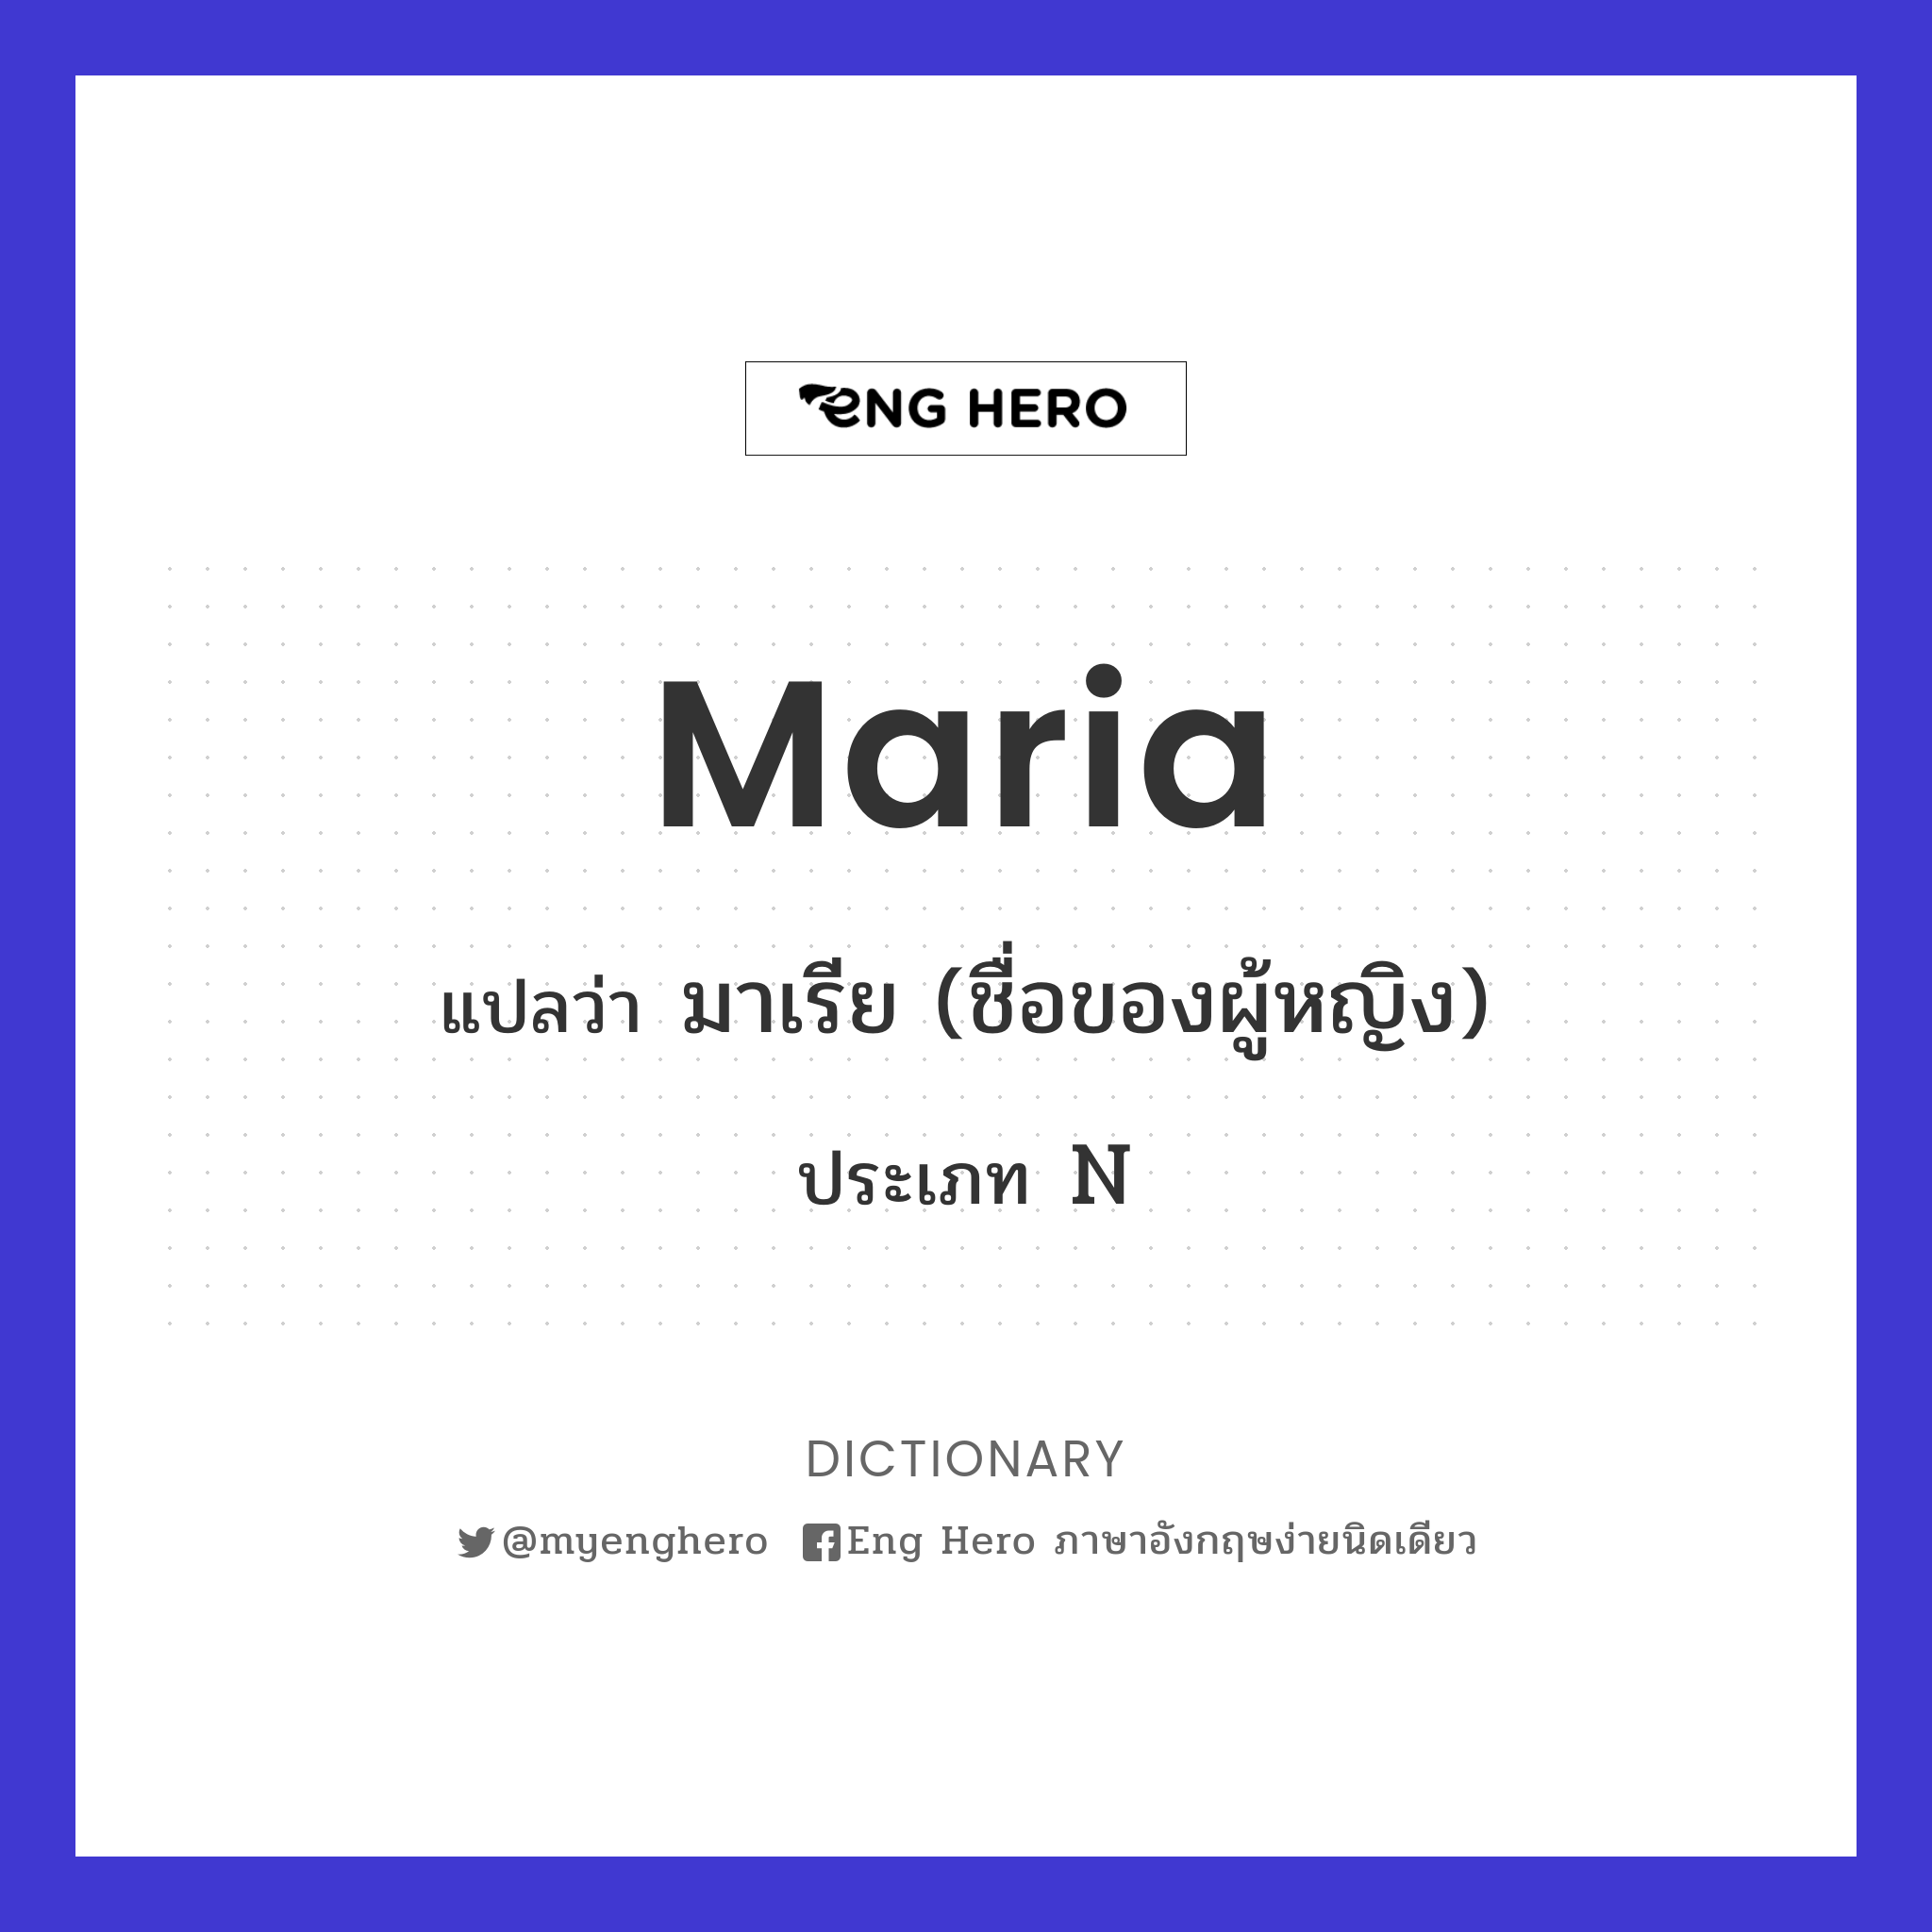 Maria แปลว่า มาเรีย (ชื่อของผู้หญิง) | Eng Hero เรียนภาษาอังกฤษ ออนไลน์ ฟรี